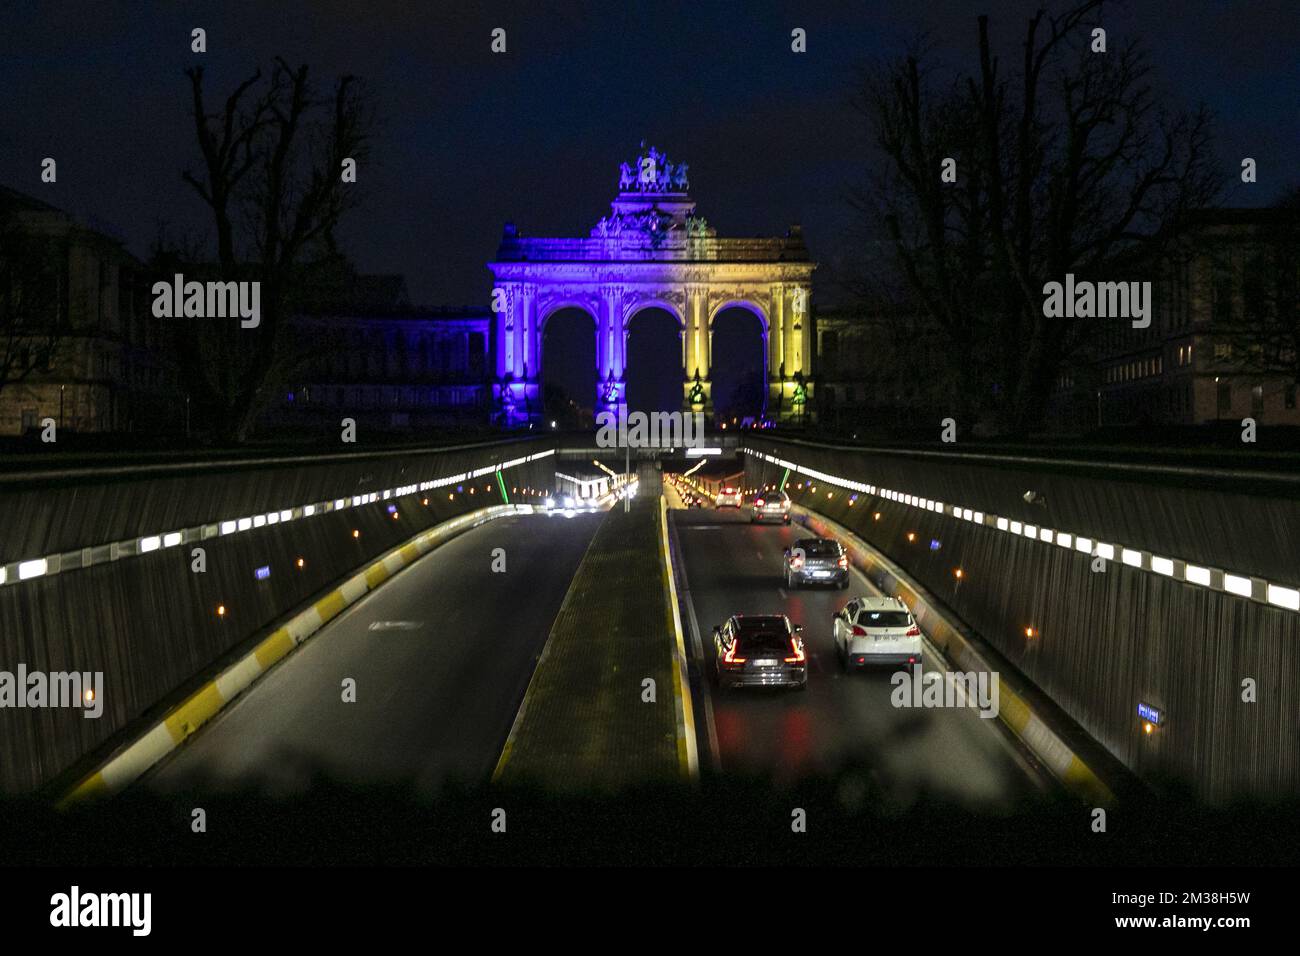 L'immagine mostra l'arco trionfale (arco di trionfo - triomfboog) al Jubelpark - Parc du Cinquantenaire, che è stato illuminato nei colori della bandiera Ucraina, per mostrare sostegno al popolo ucraino, a Bruxelles, giovedì 24 febbraio 2022. Ieri sera, la Russia ha deciso di invadere diverse regioni ucraine. BELGA FOTO HATIM KAGHAT Foto Stock